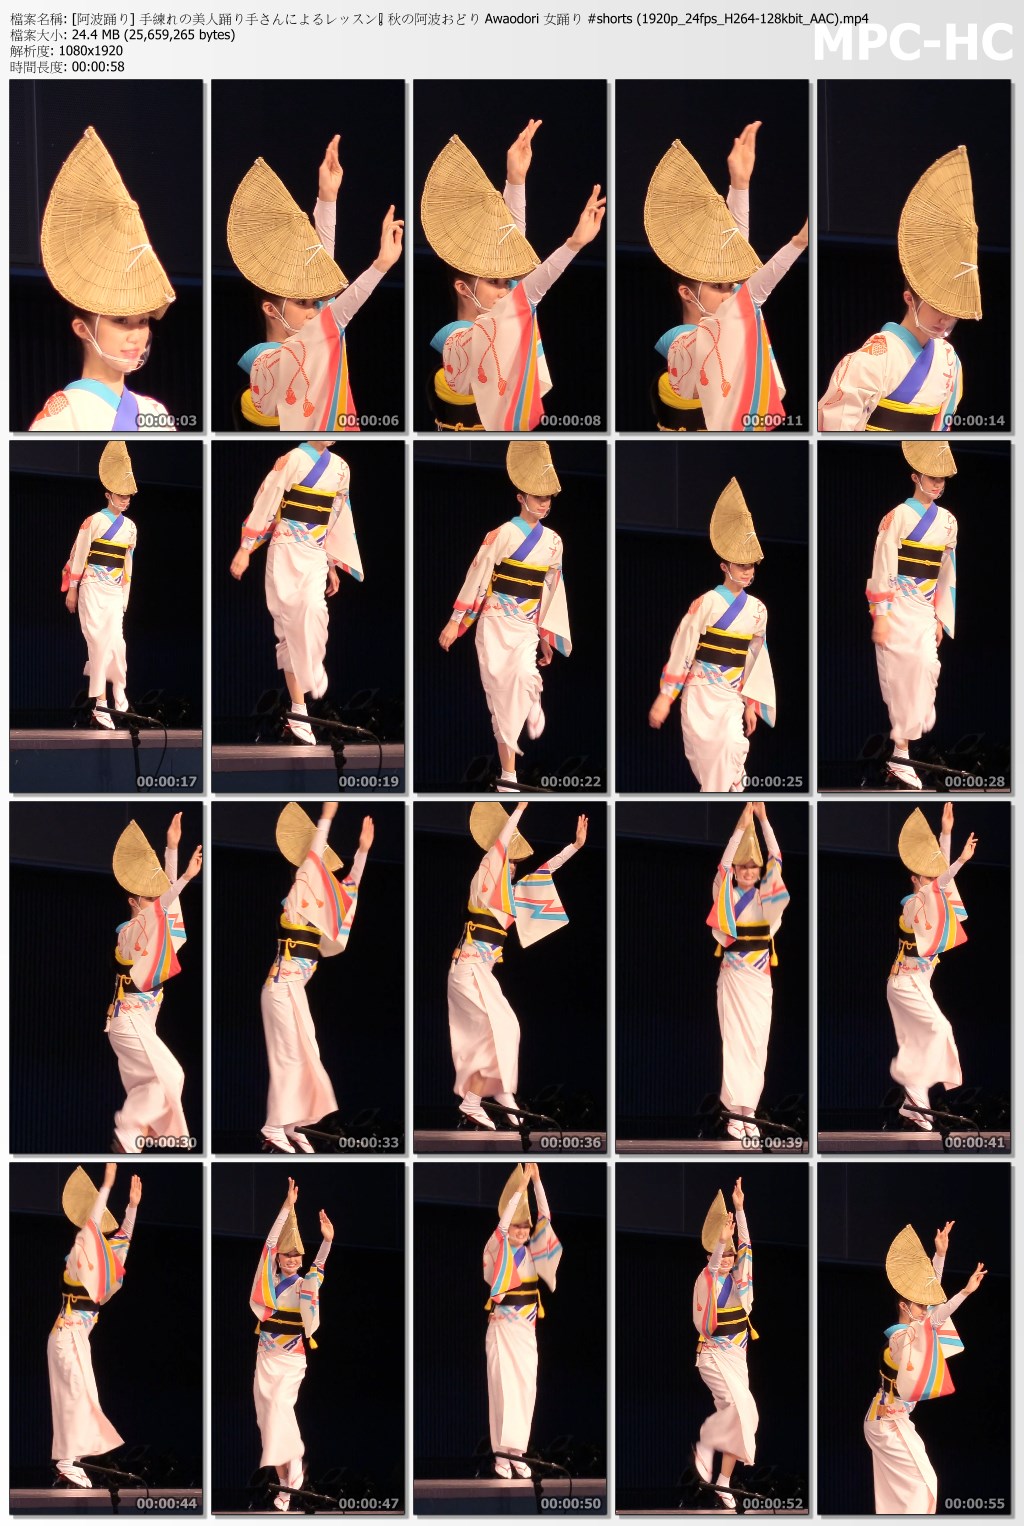 [阿波踊り] 手練れの美人踊り手さんによるレッスン❗️ 秋の阿波おどり.jpg